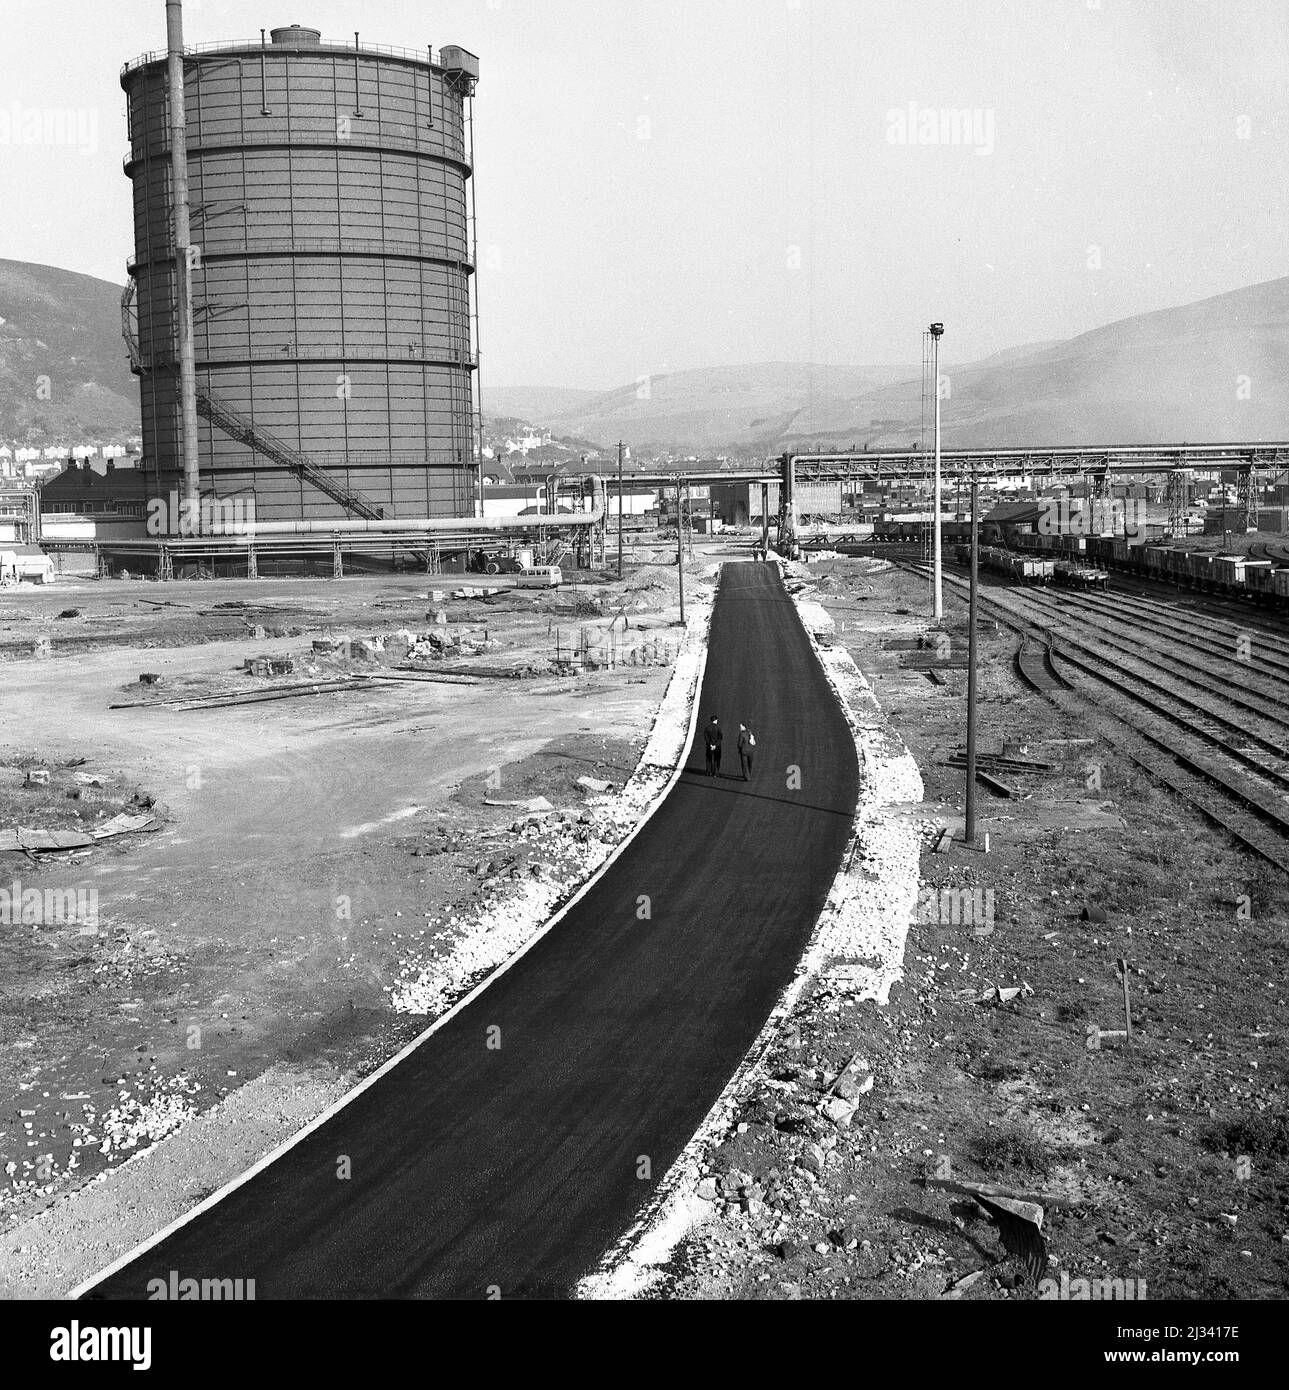 1950, historique, l'usine sidérurgique géante Abbey Works en construction, la photo montre une route d'accès nouvellement posée à l'usine à côté des voies de chemin de fer, Port Talbot, pays de Galles, Royaume-Uni. Banque D'Images